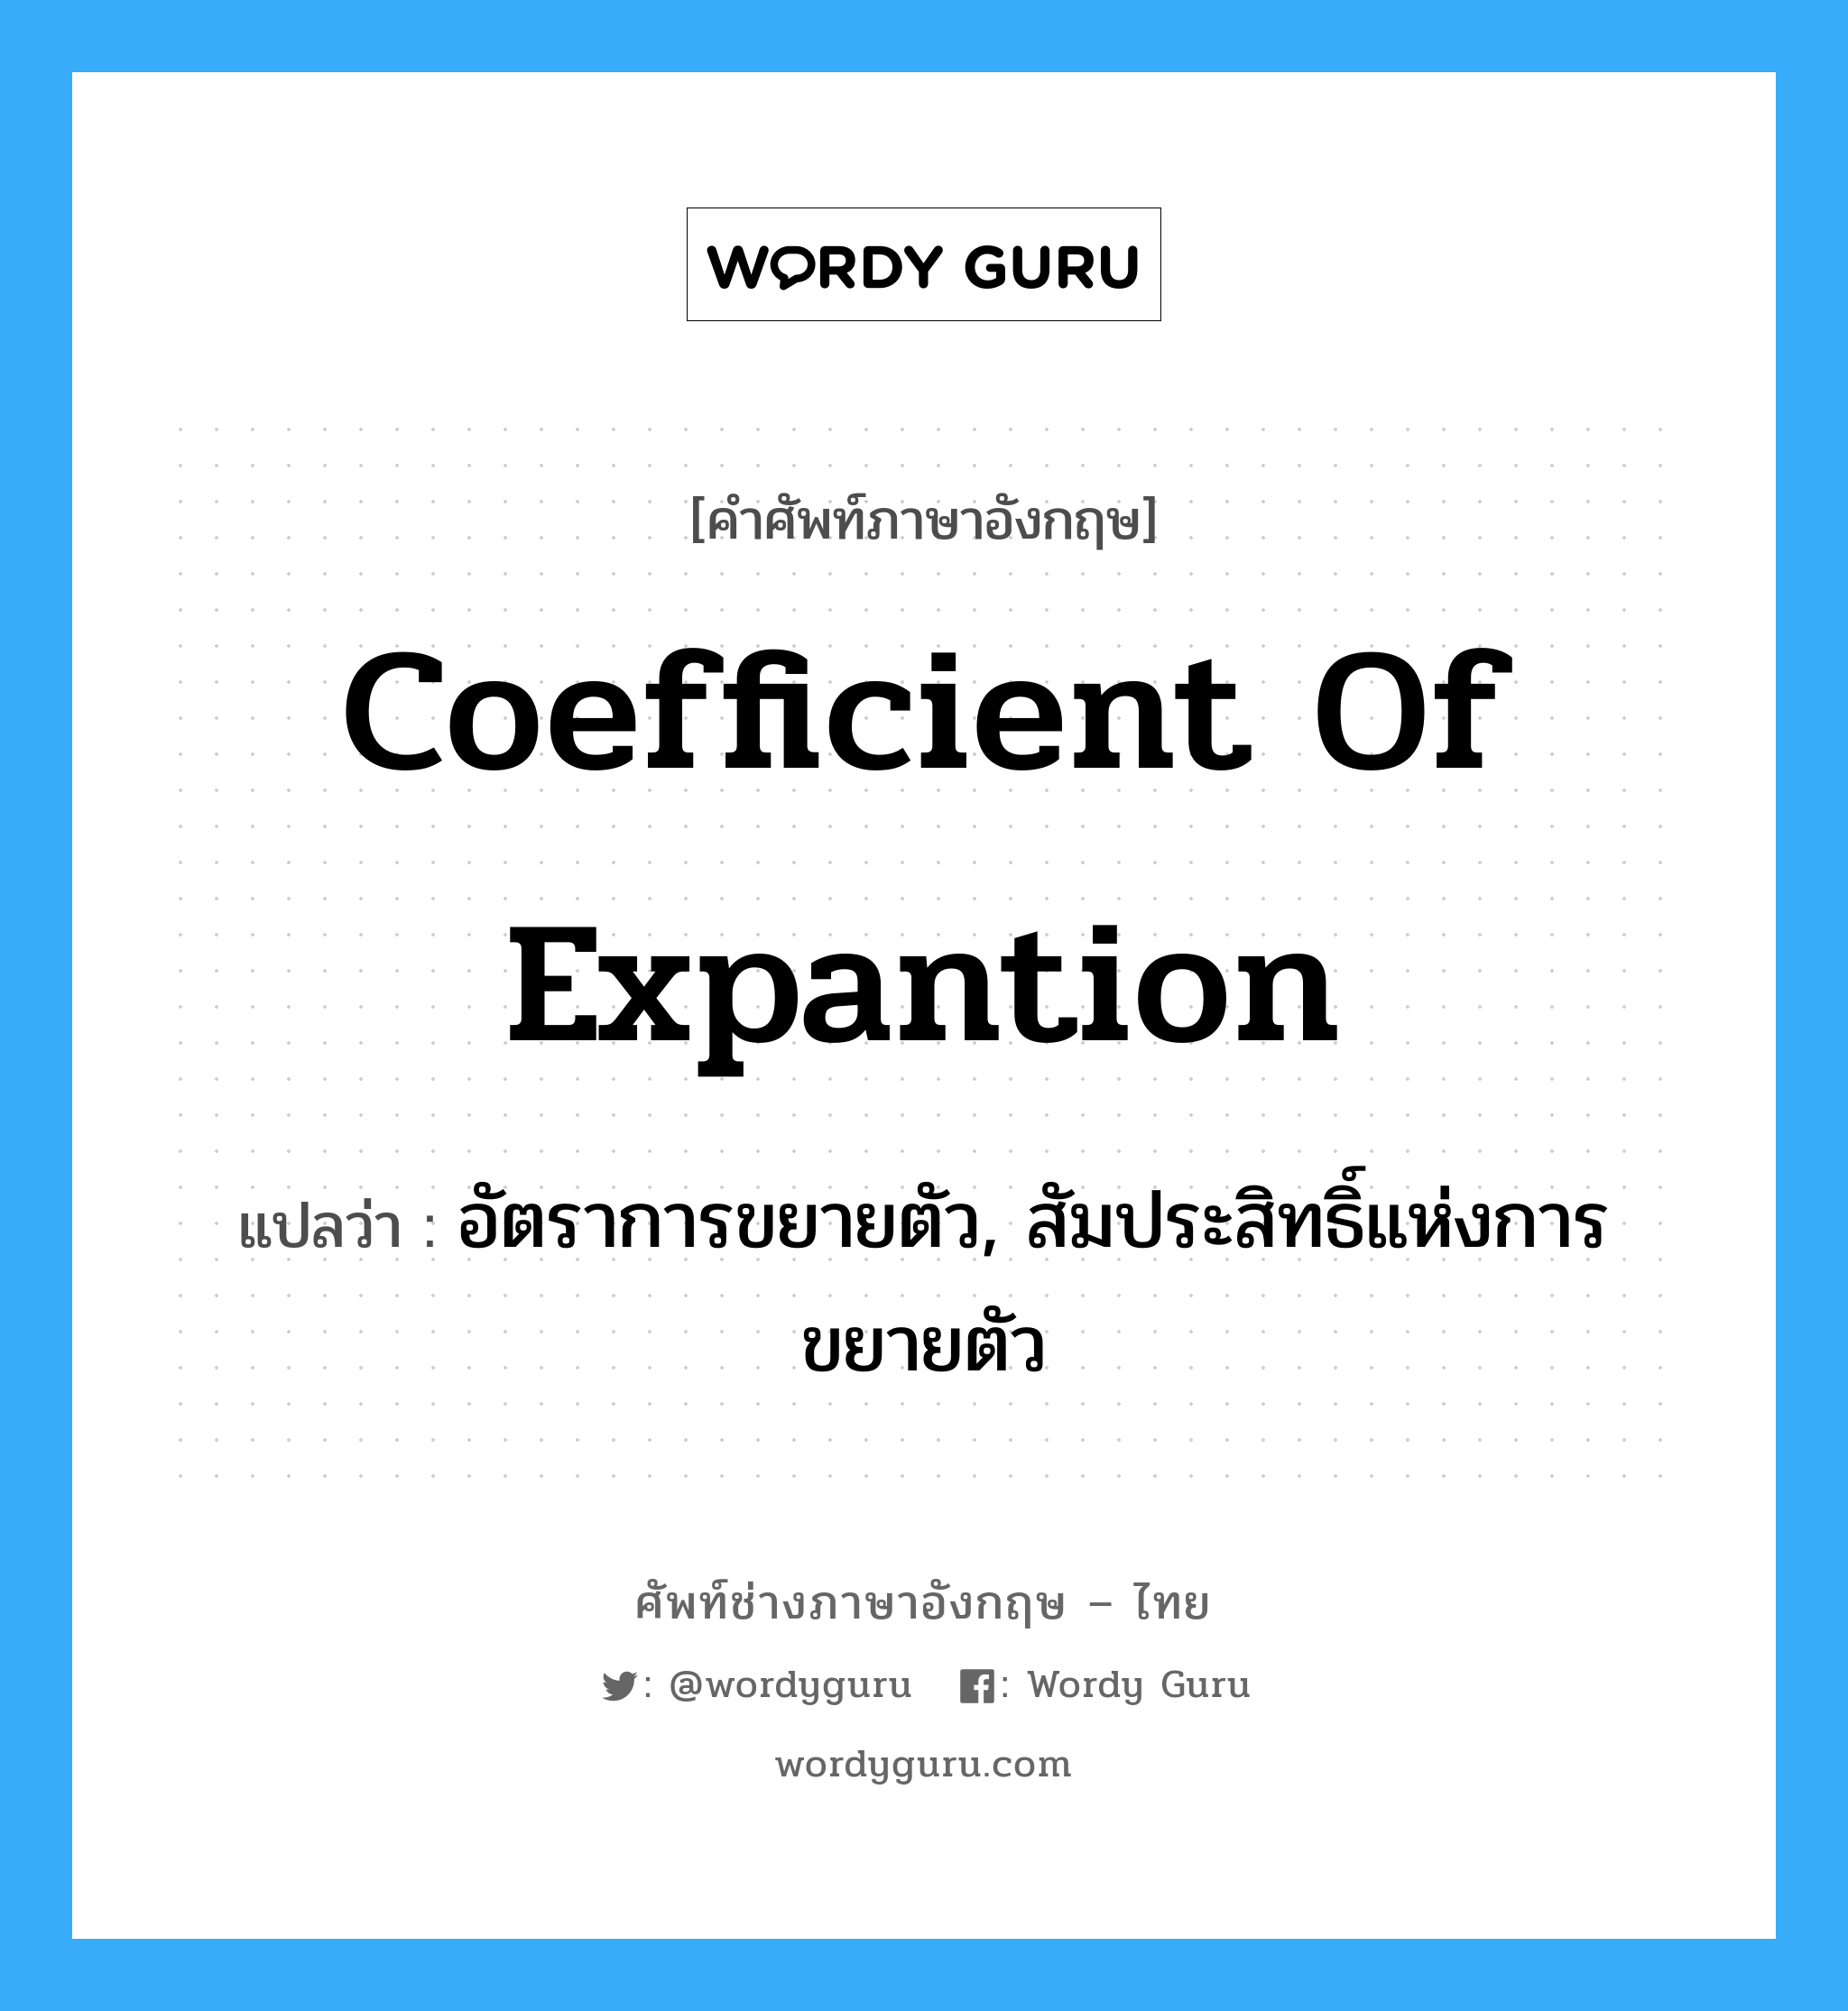 coefficient of expantion แปลว่า?, คำศัพท์ช่างภาษาอังกฤษ - ไทย coefficient of expantion คำศัพท์ภาษาอังกฤษ coefficient of expantion แปลว่า อัตราการขยายตัว, สัมประสิทธิ์แห่งการขยายตัว